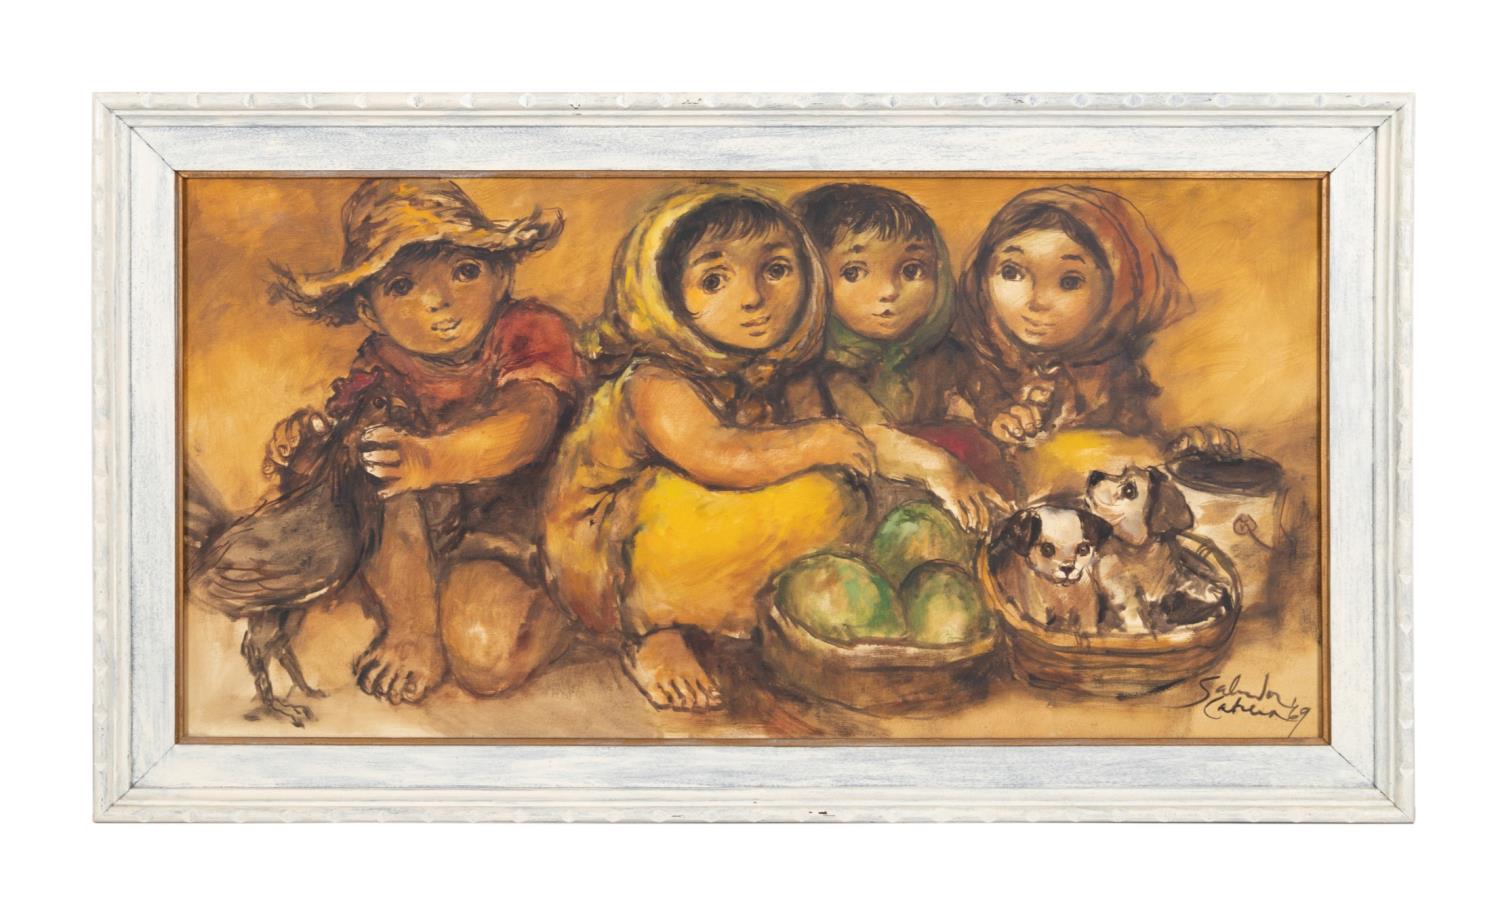 S. CABRERA "CHILDREN WITH MANGOS